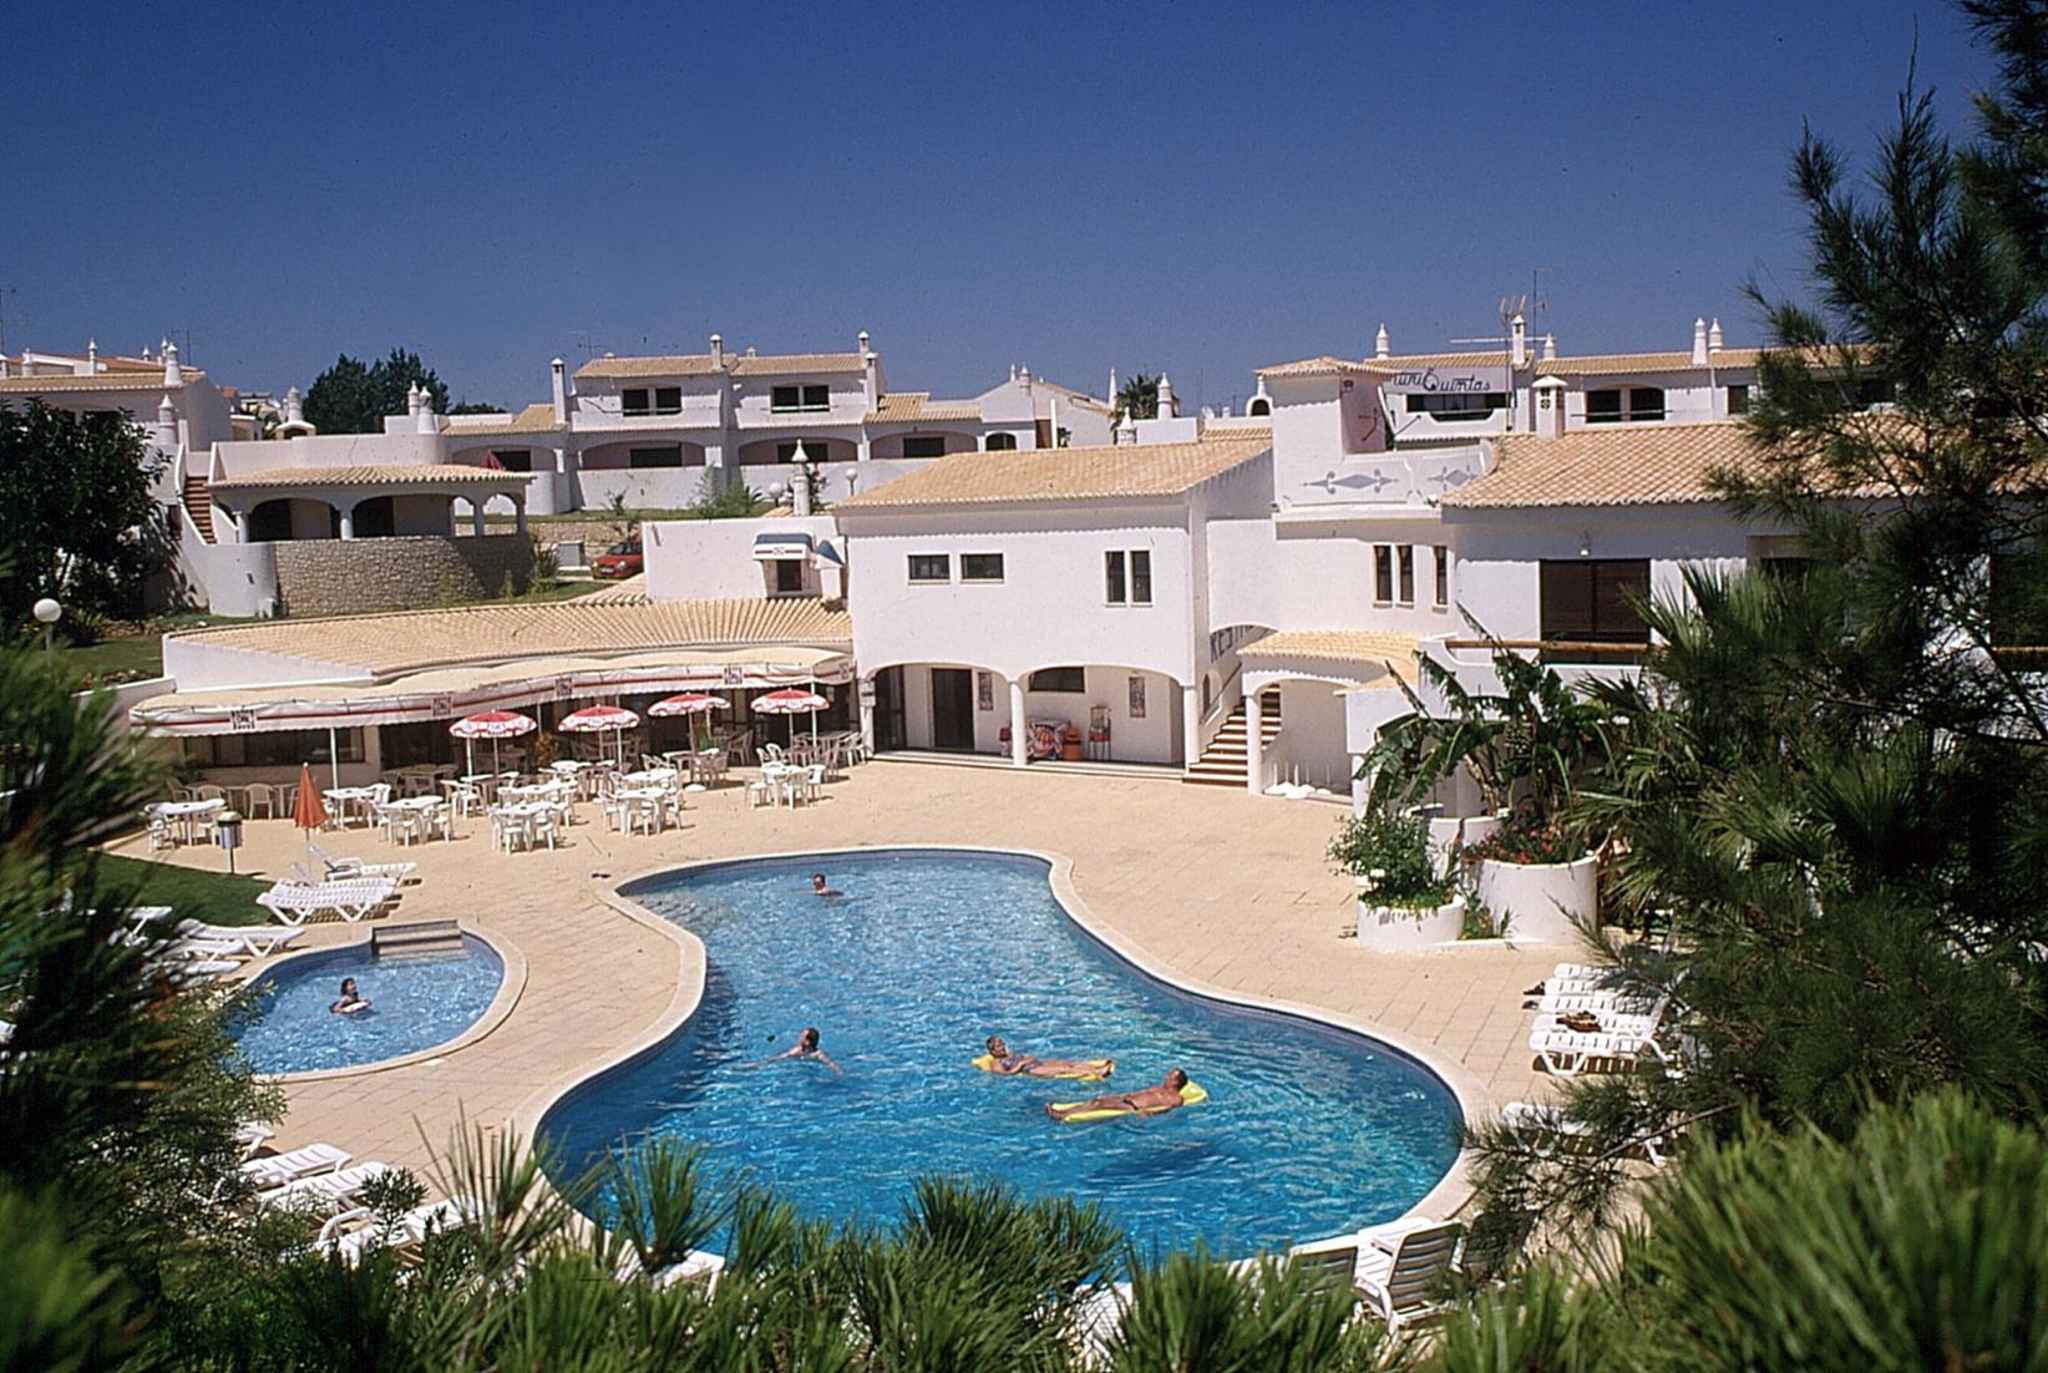 Ferienhaus mit Außenpool in Ferienanlage  in Portugal